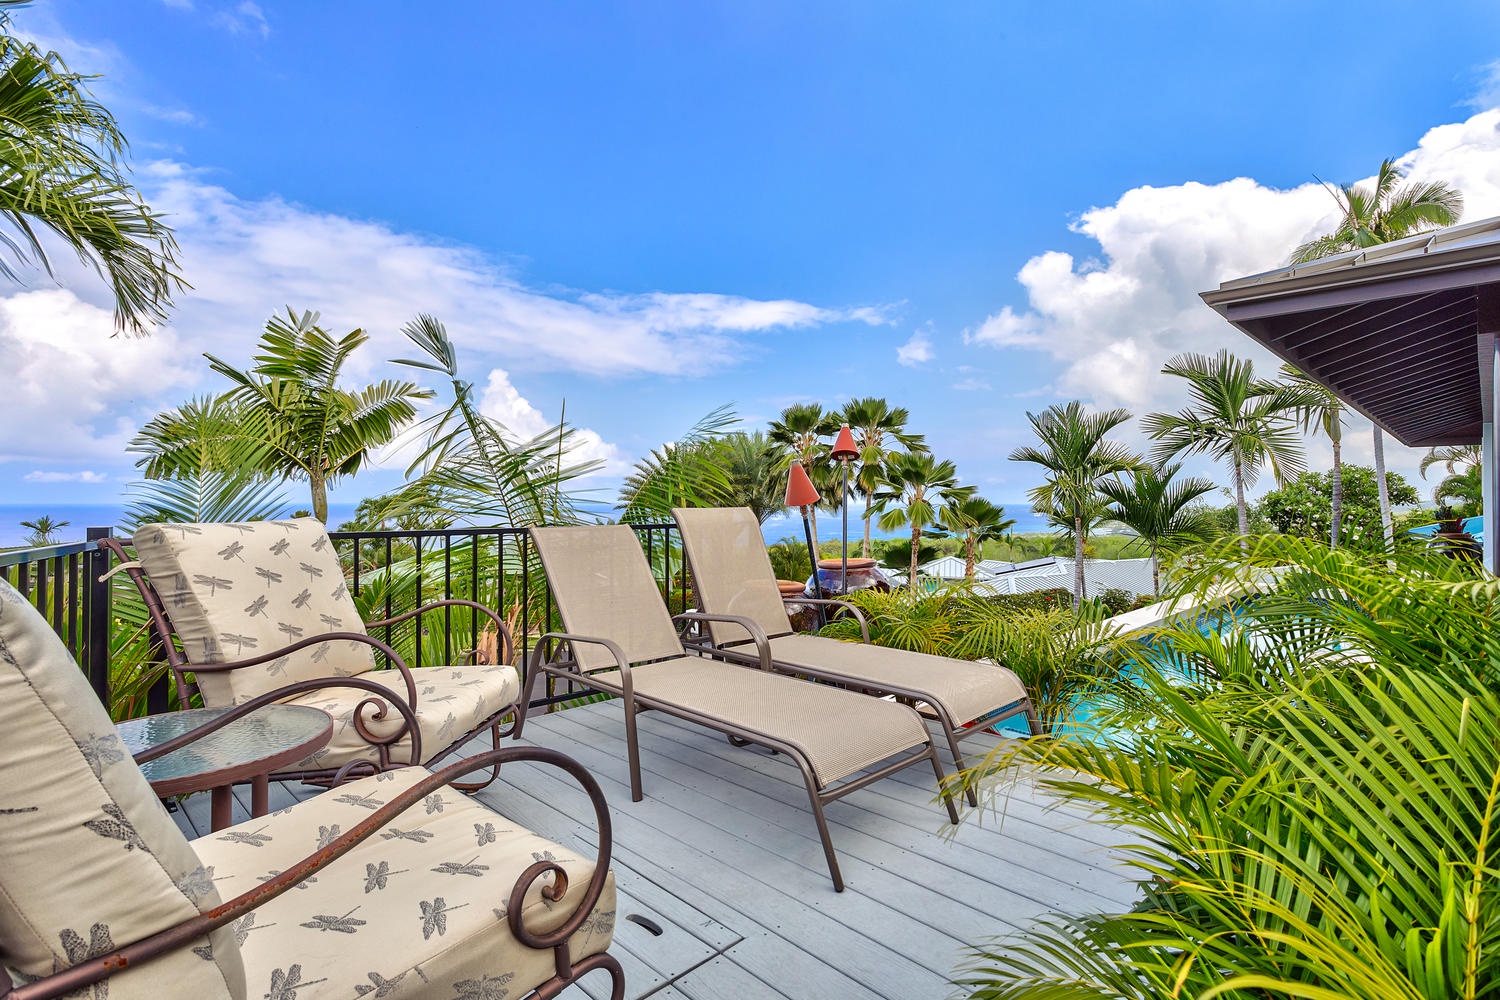 Kailua Kona Vacation Rentals, Ohana le'ale'a - Relax poolside